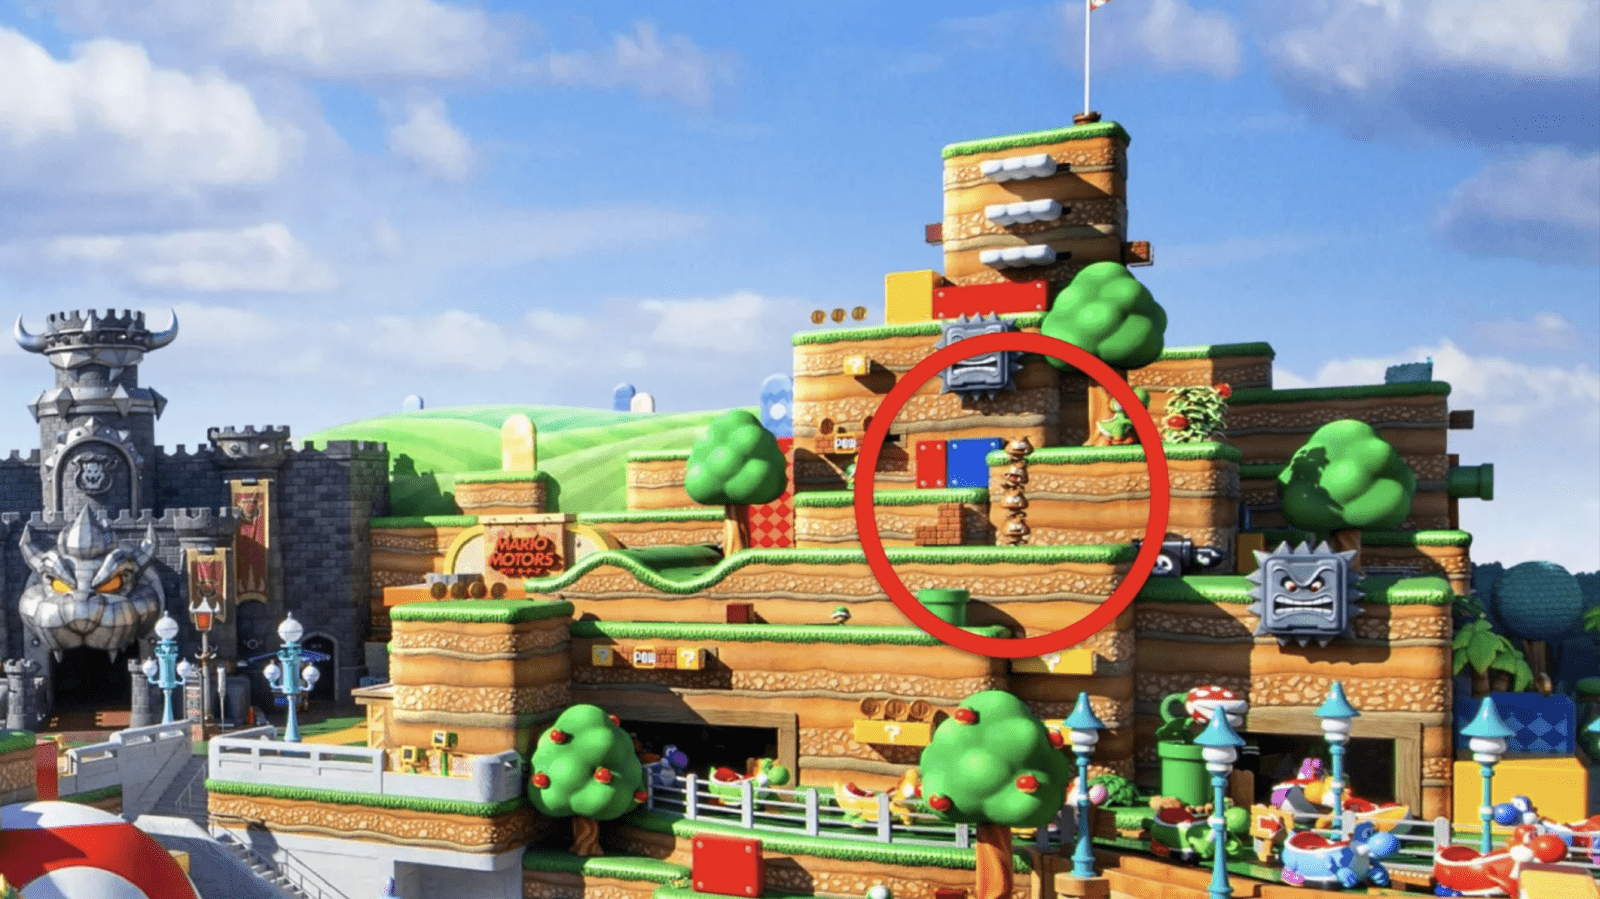 Torre de Goomba do Super Nintendo World cai e investigação é iniciada